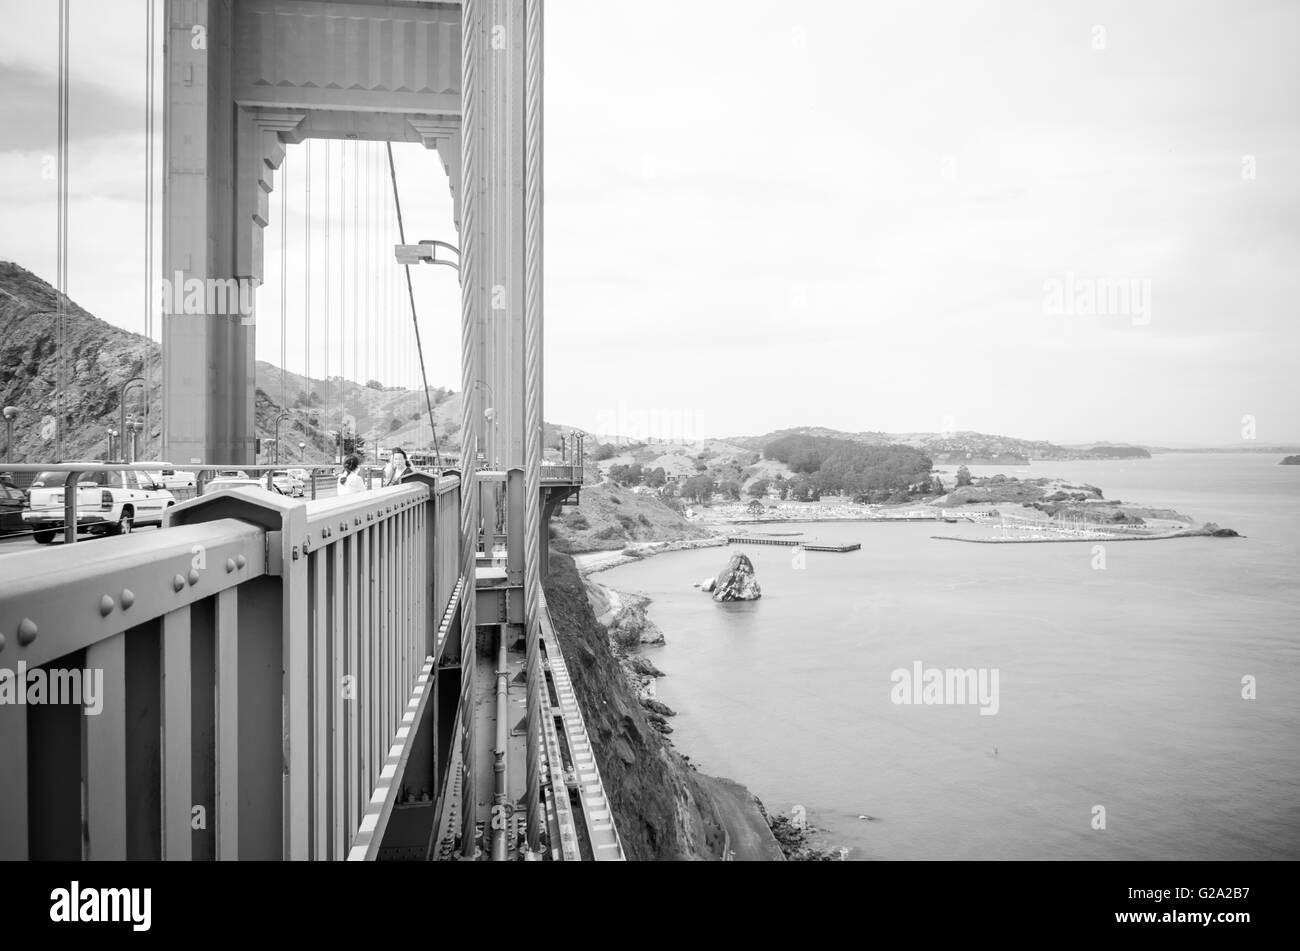 San Francisco, CA, EUA - July 01 2015: Golden Gate Bridge, San Francisco, California, USA. Stock Photo